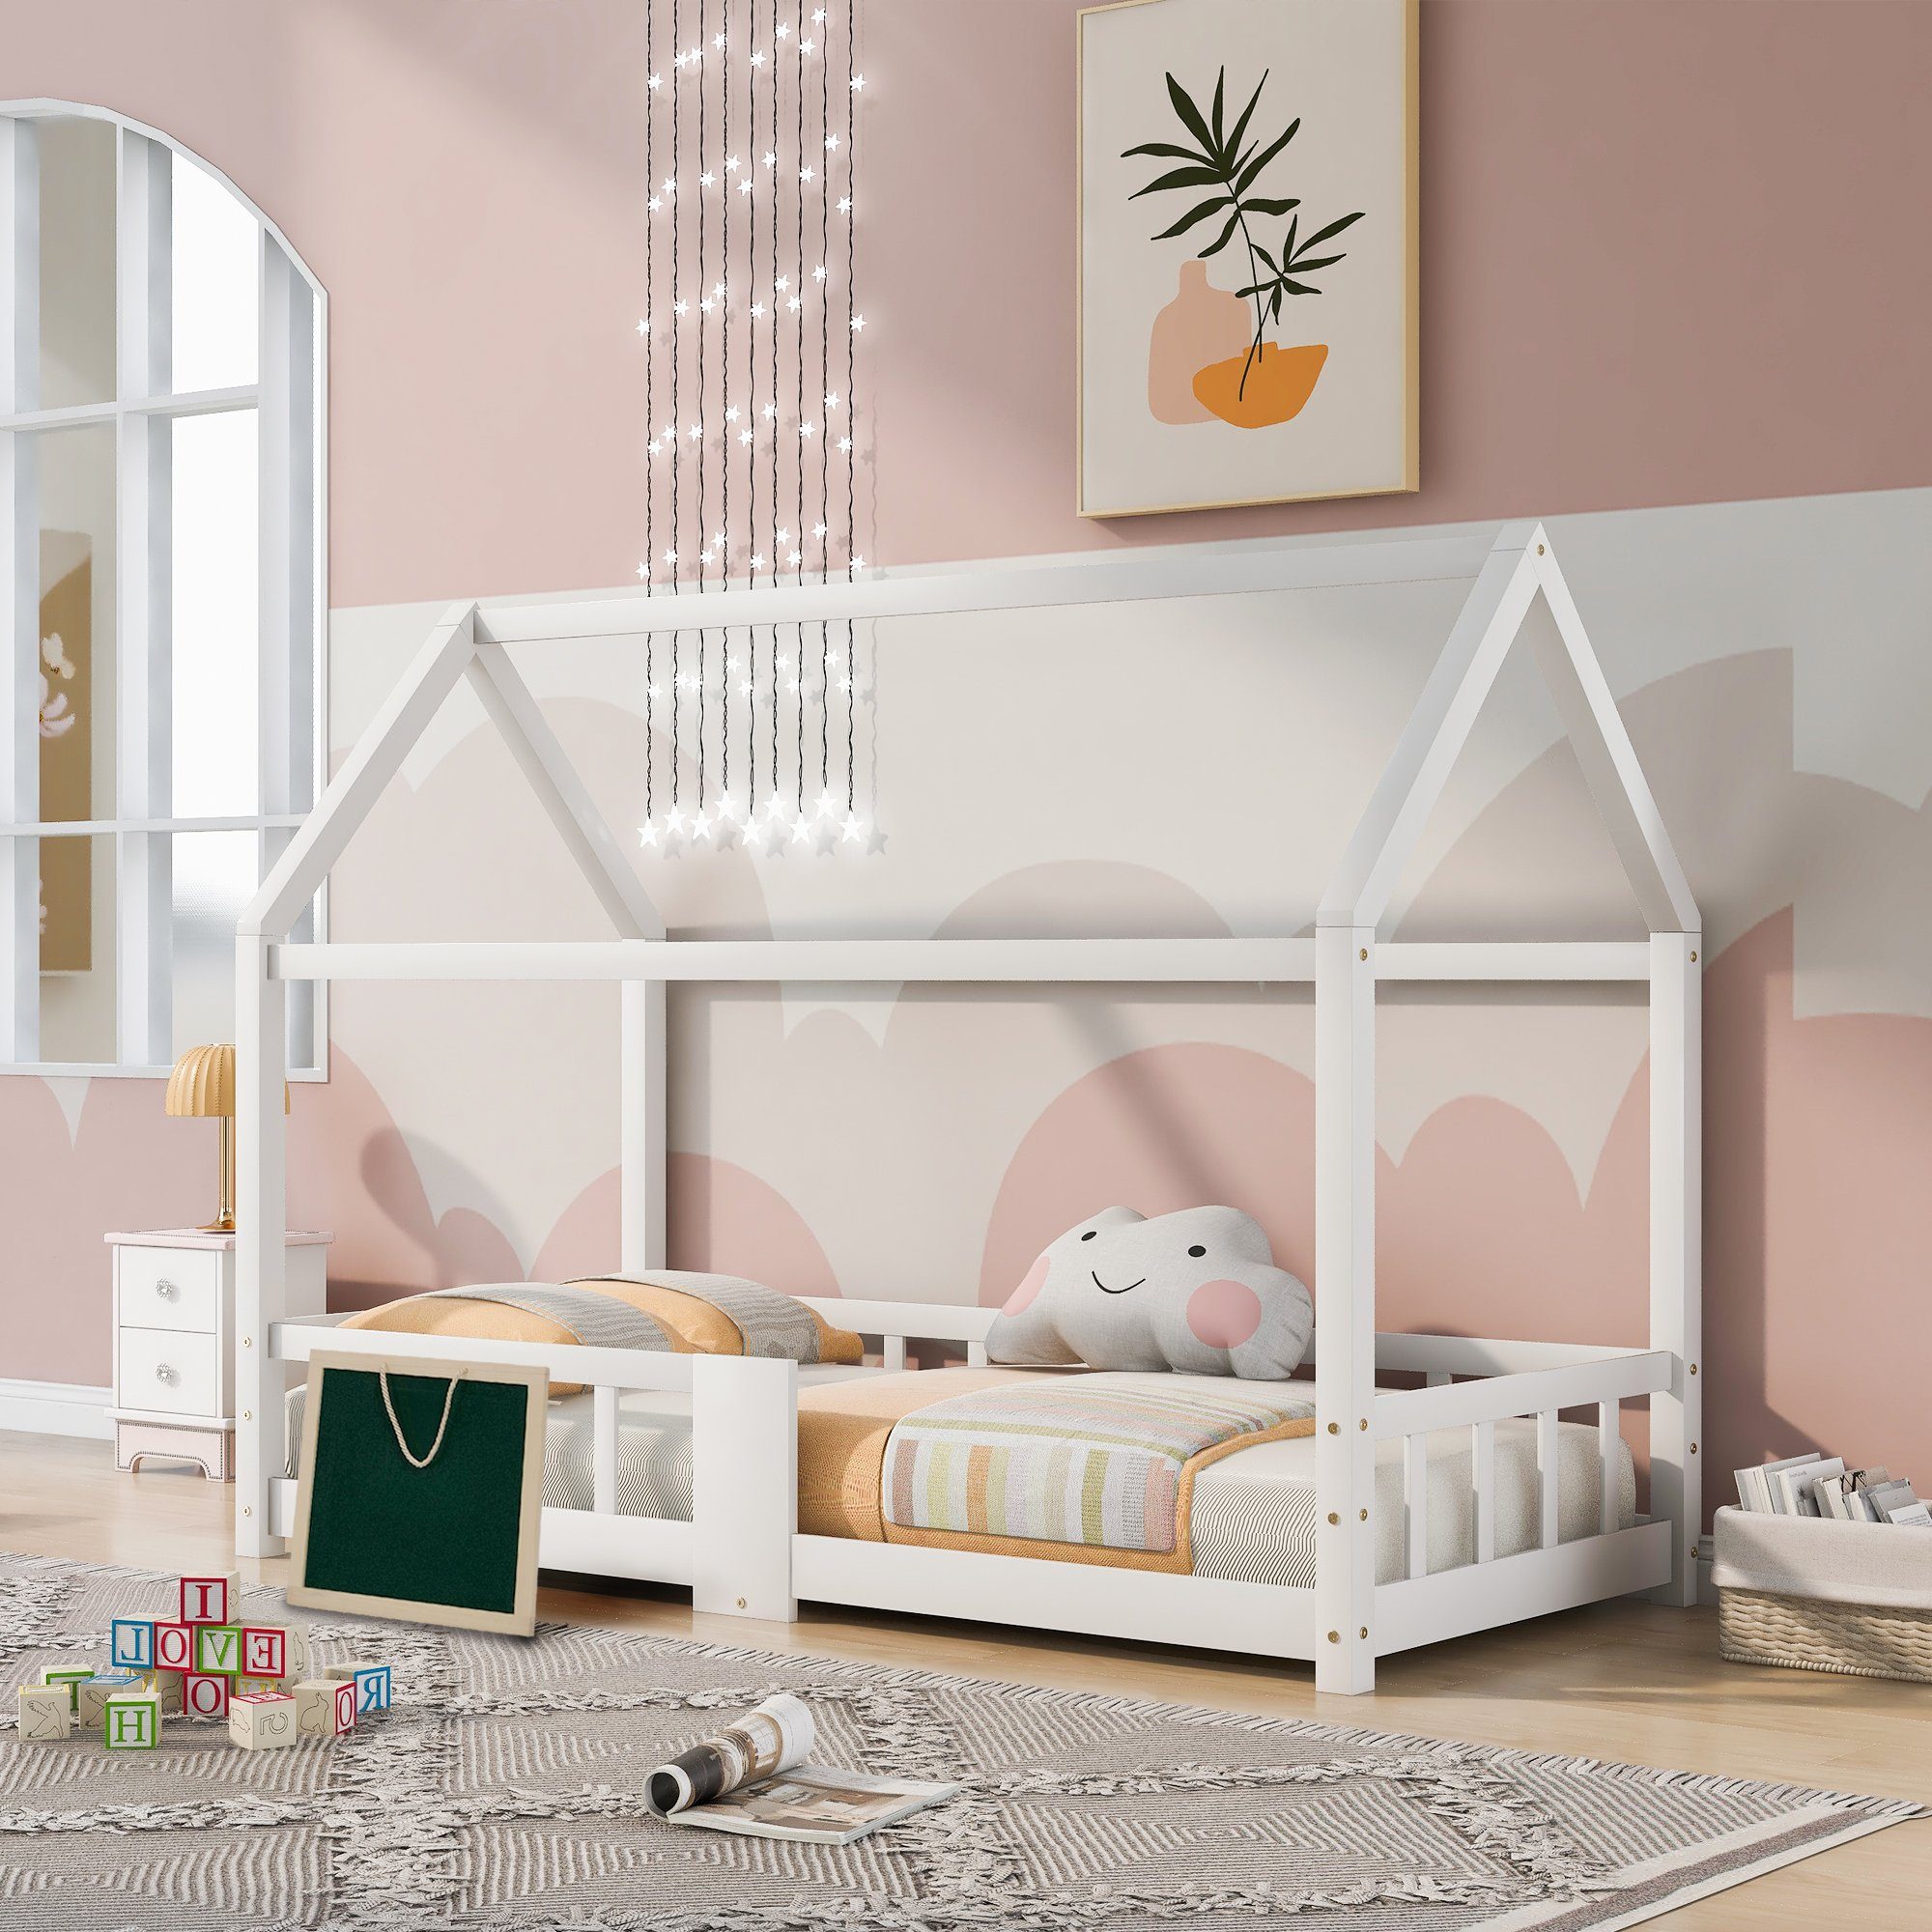 SOFTWEARY Kinderbett Hausbett mit Lattenrost, 90x200 cm, Holzbett aus Kieferholz, Einzelbett mit Rausfallschutz und Zaun, Jugendbett weiß